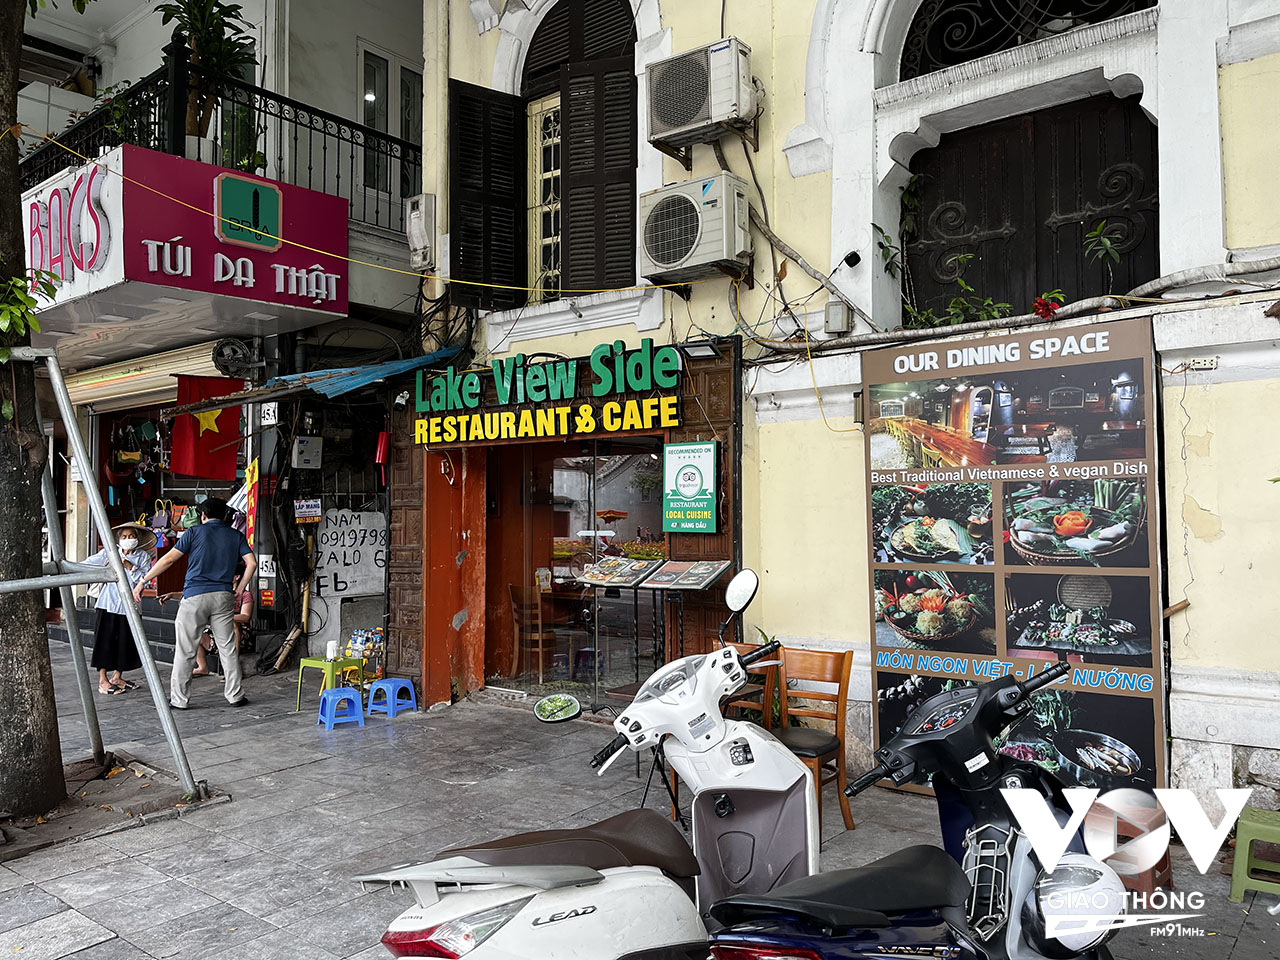 Nhiều năm trước, Sở Văn hoá - Thể thao - Du lịch Hà Nội đã cho lập văn phòng tiếp nhận thông tin và giúp đỡ du khách quốc tế khi đến Thủ đô, nhưng gần như văn phòng này lúc nào cũng đóng cửa im ỉm, và một thời gian sau thì chuyển thành quán cà phê